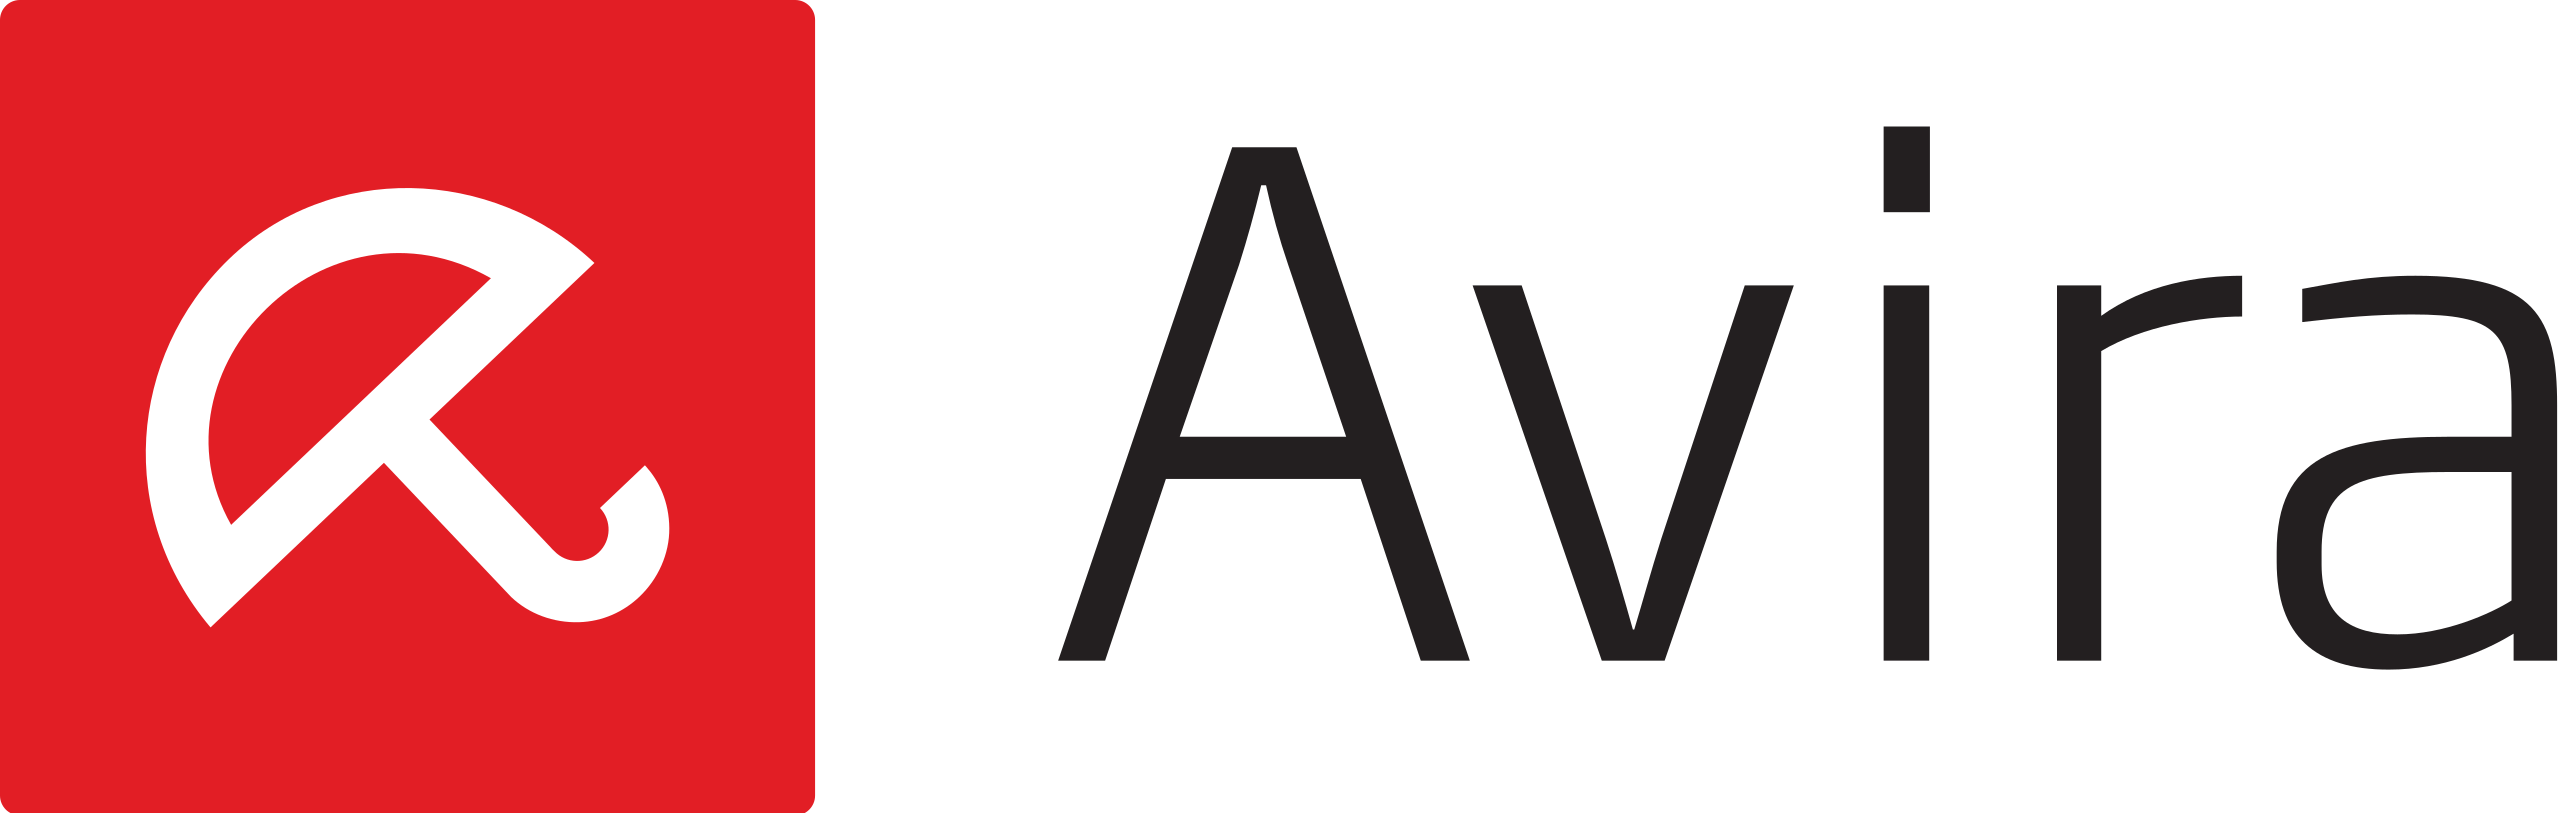 Avira_logo_2014.svg